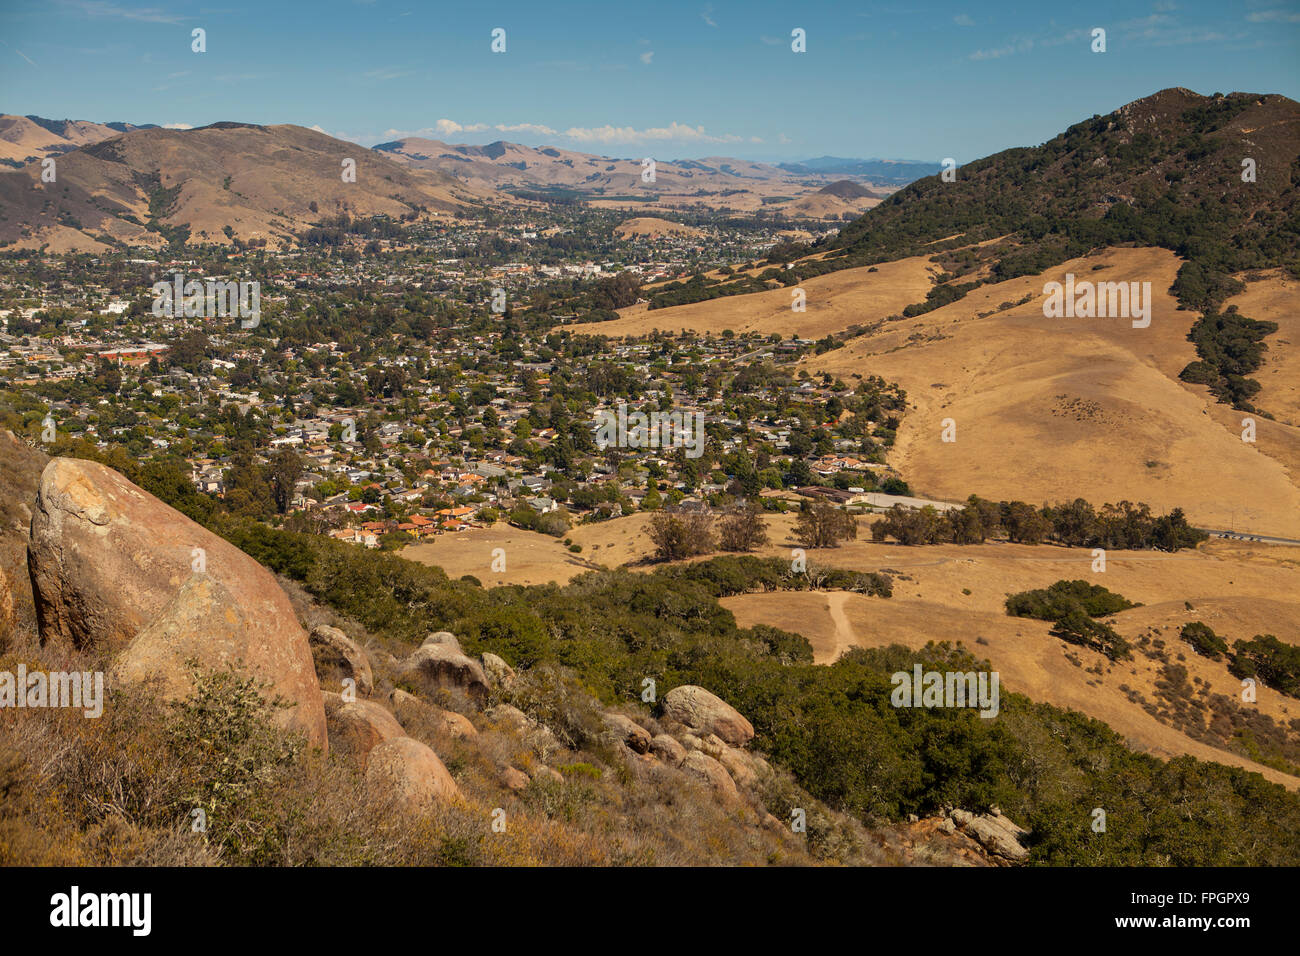 view of San Luis Obispo from Bishop Peak, San Luis Obispo, California Stock Photo